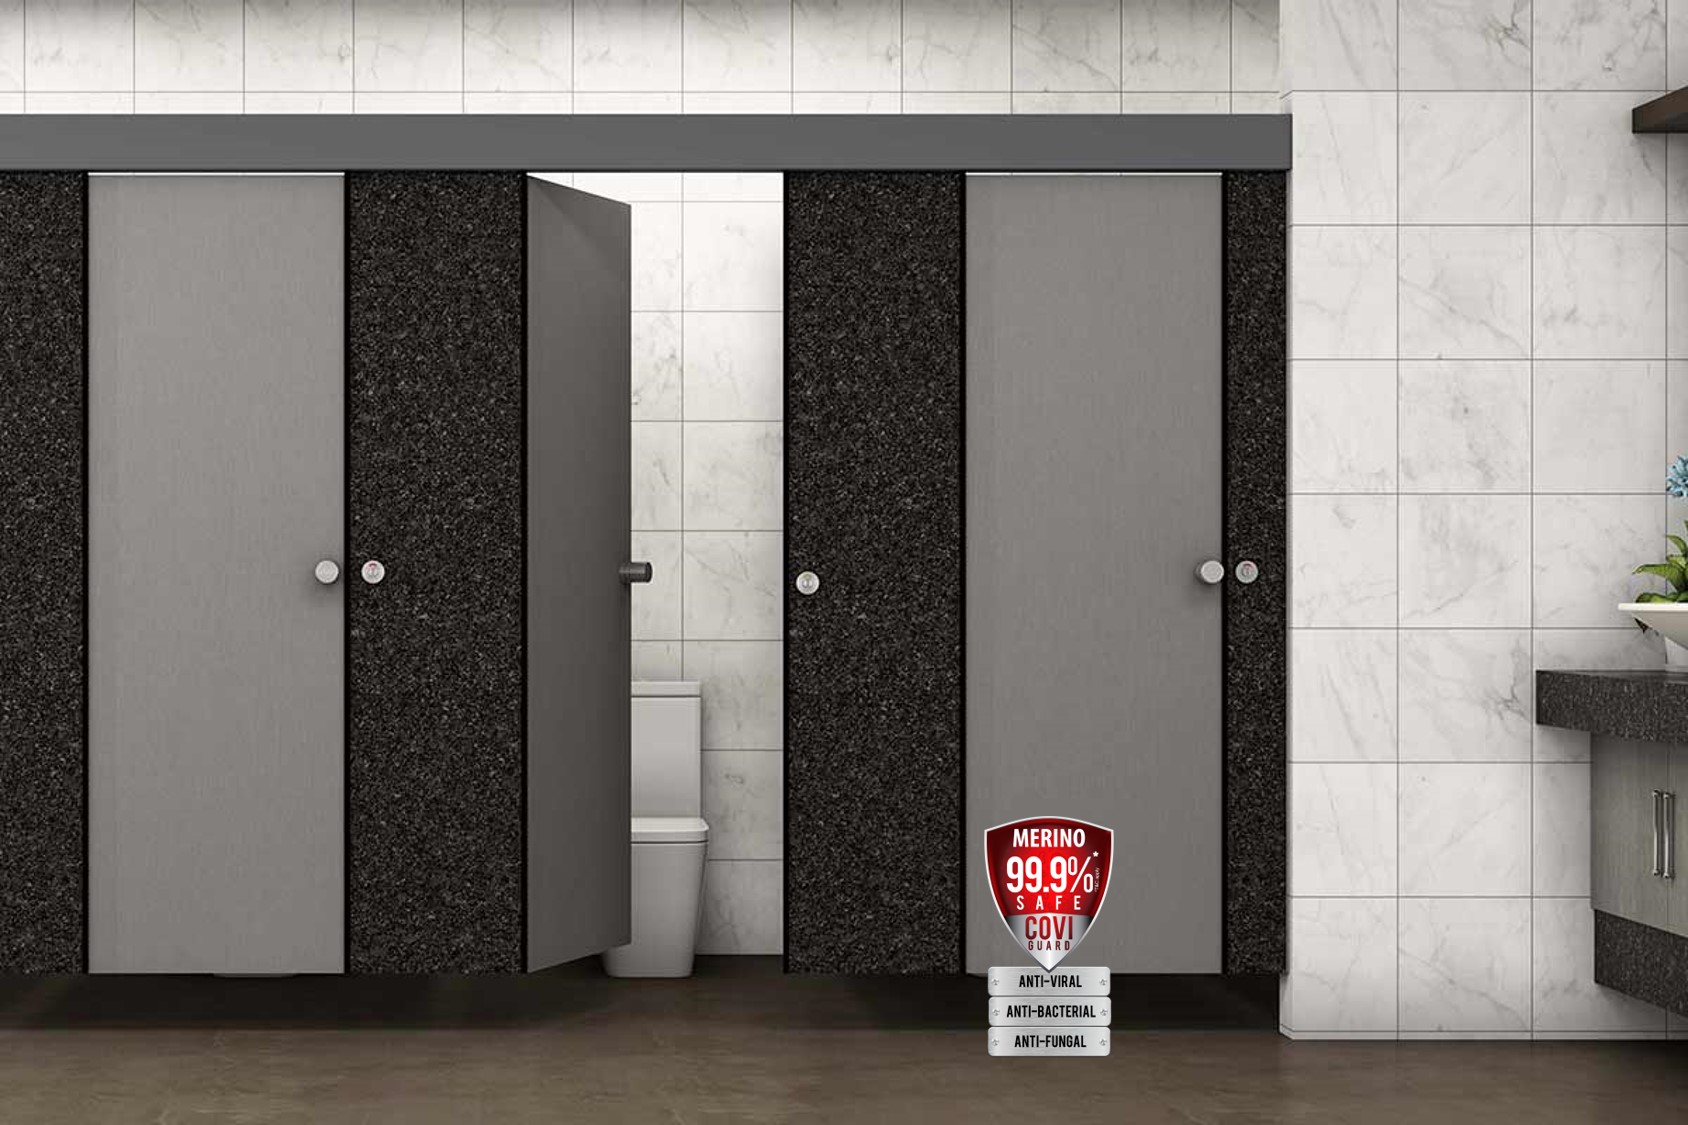 Athena Lite a revolutionary restroom partition design